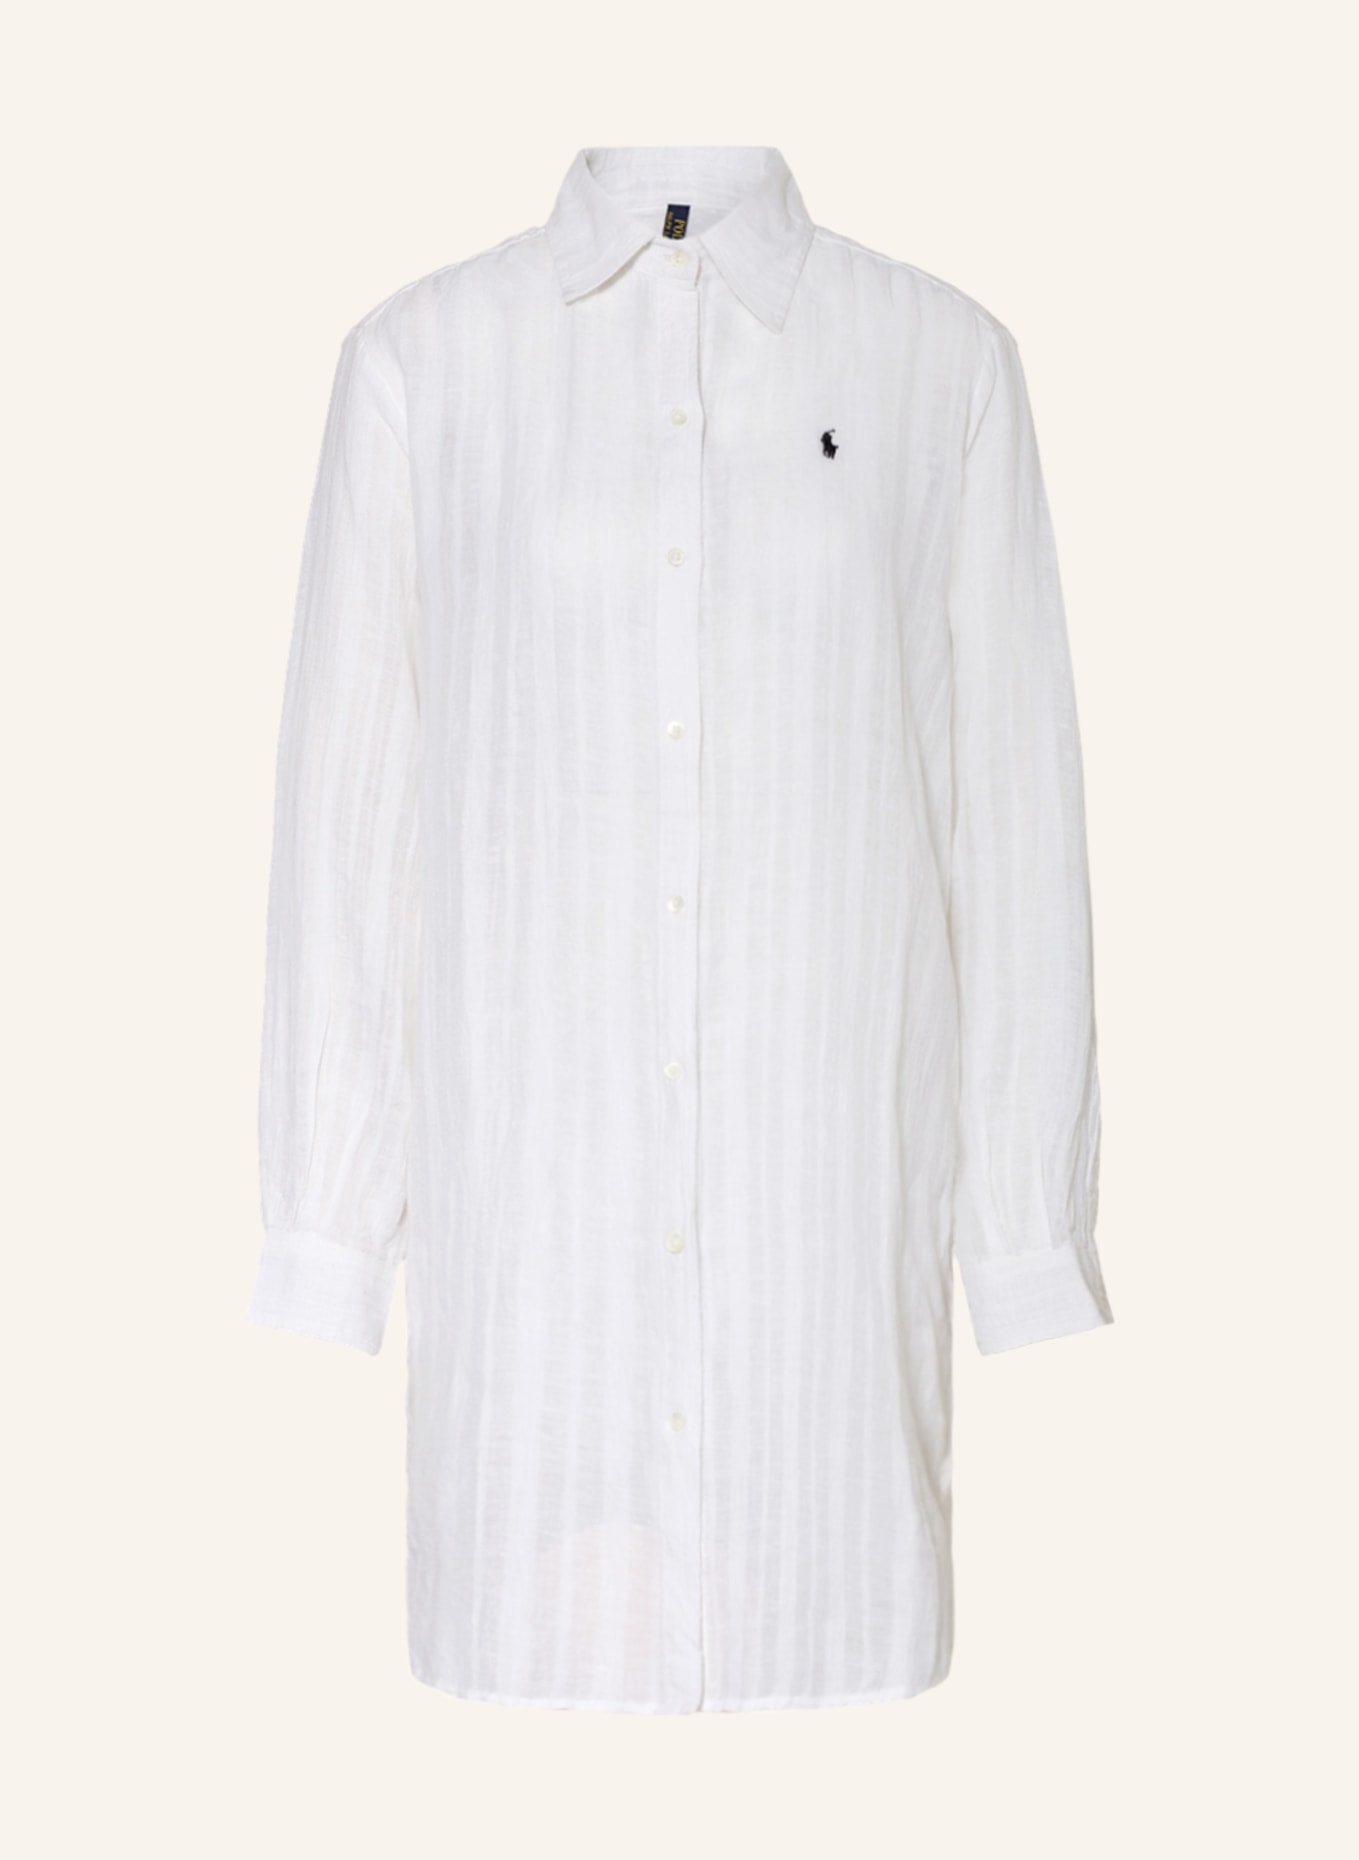 POLO RALPH LAUREN Shirt blouse, Color: WHITE (Image 1)